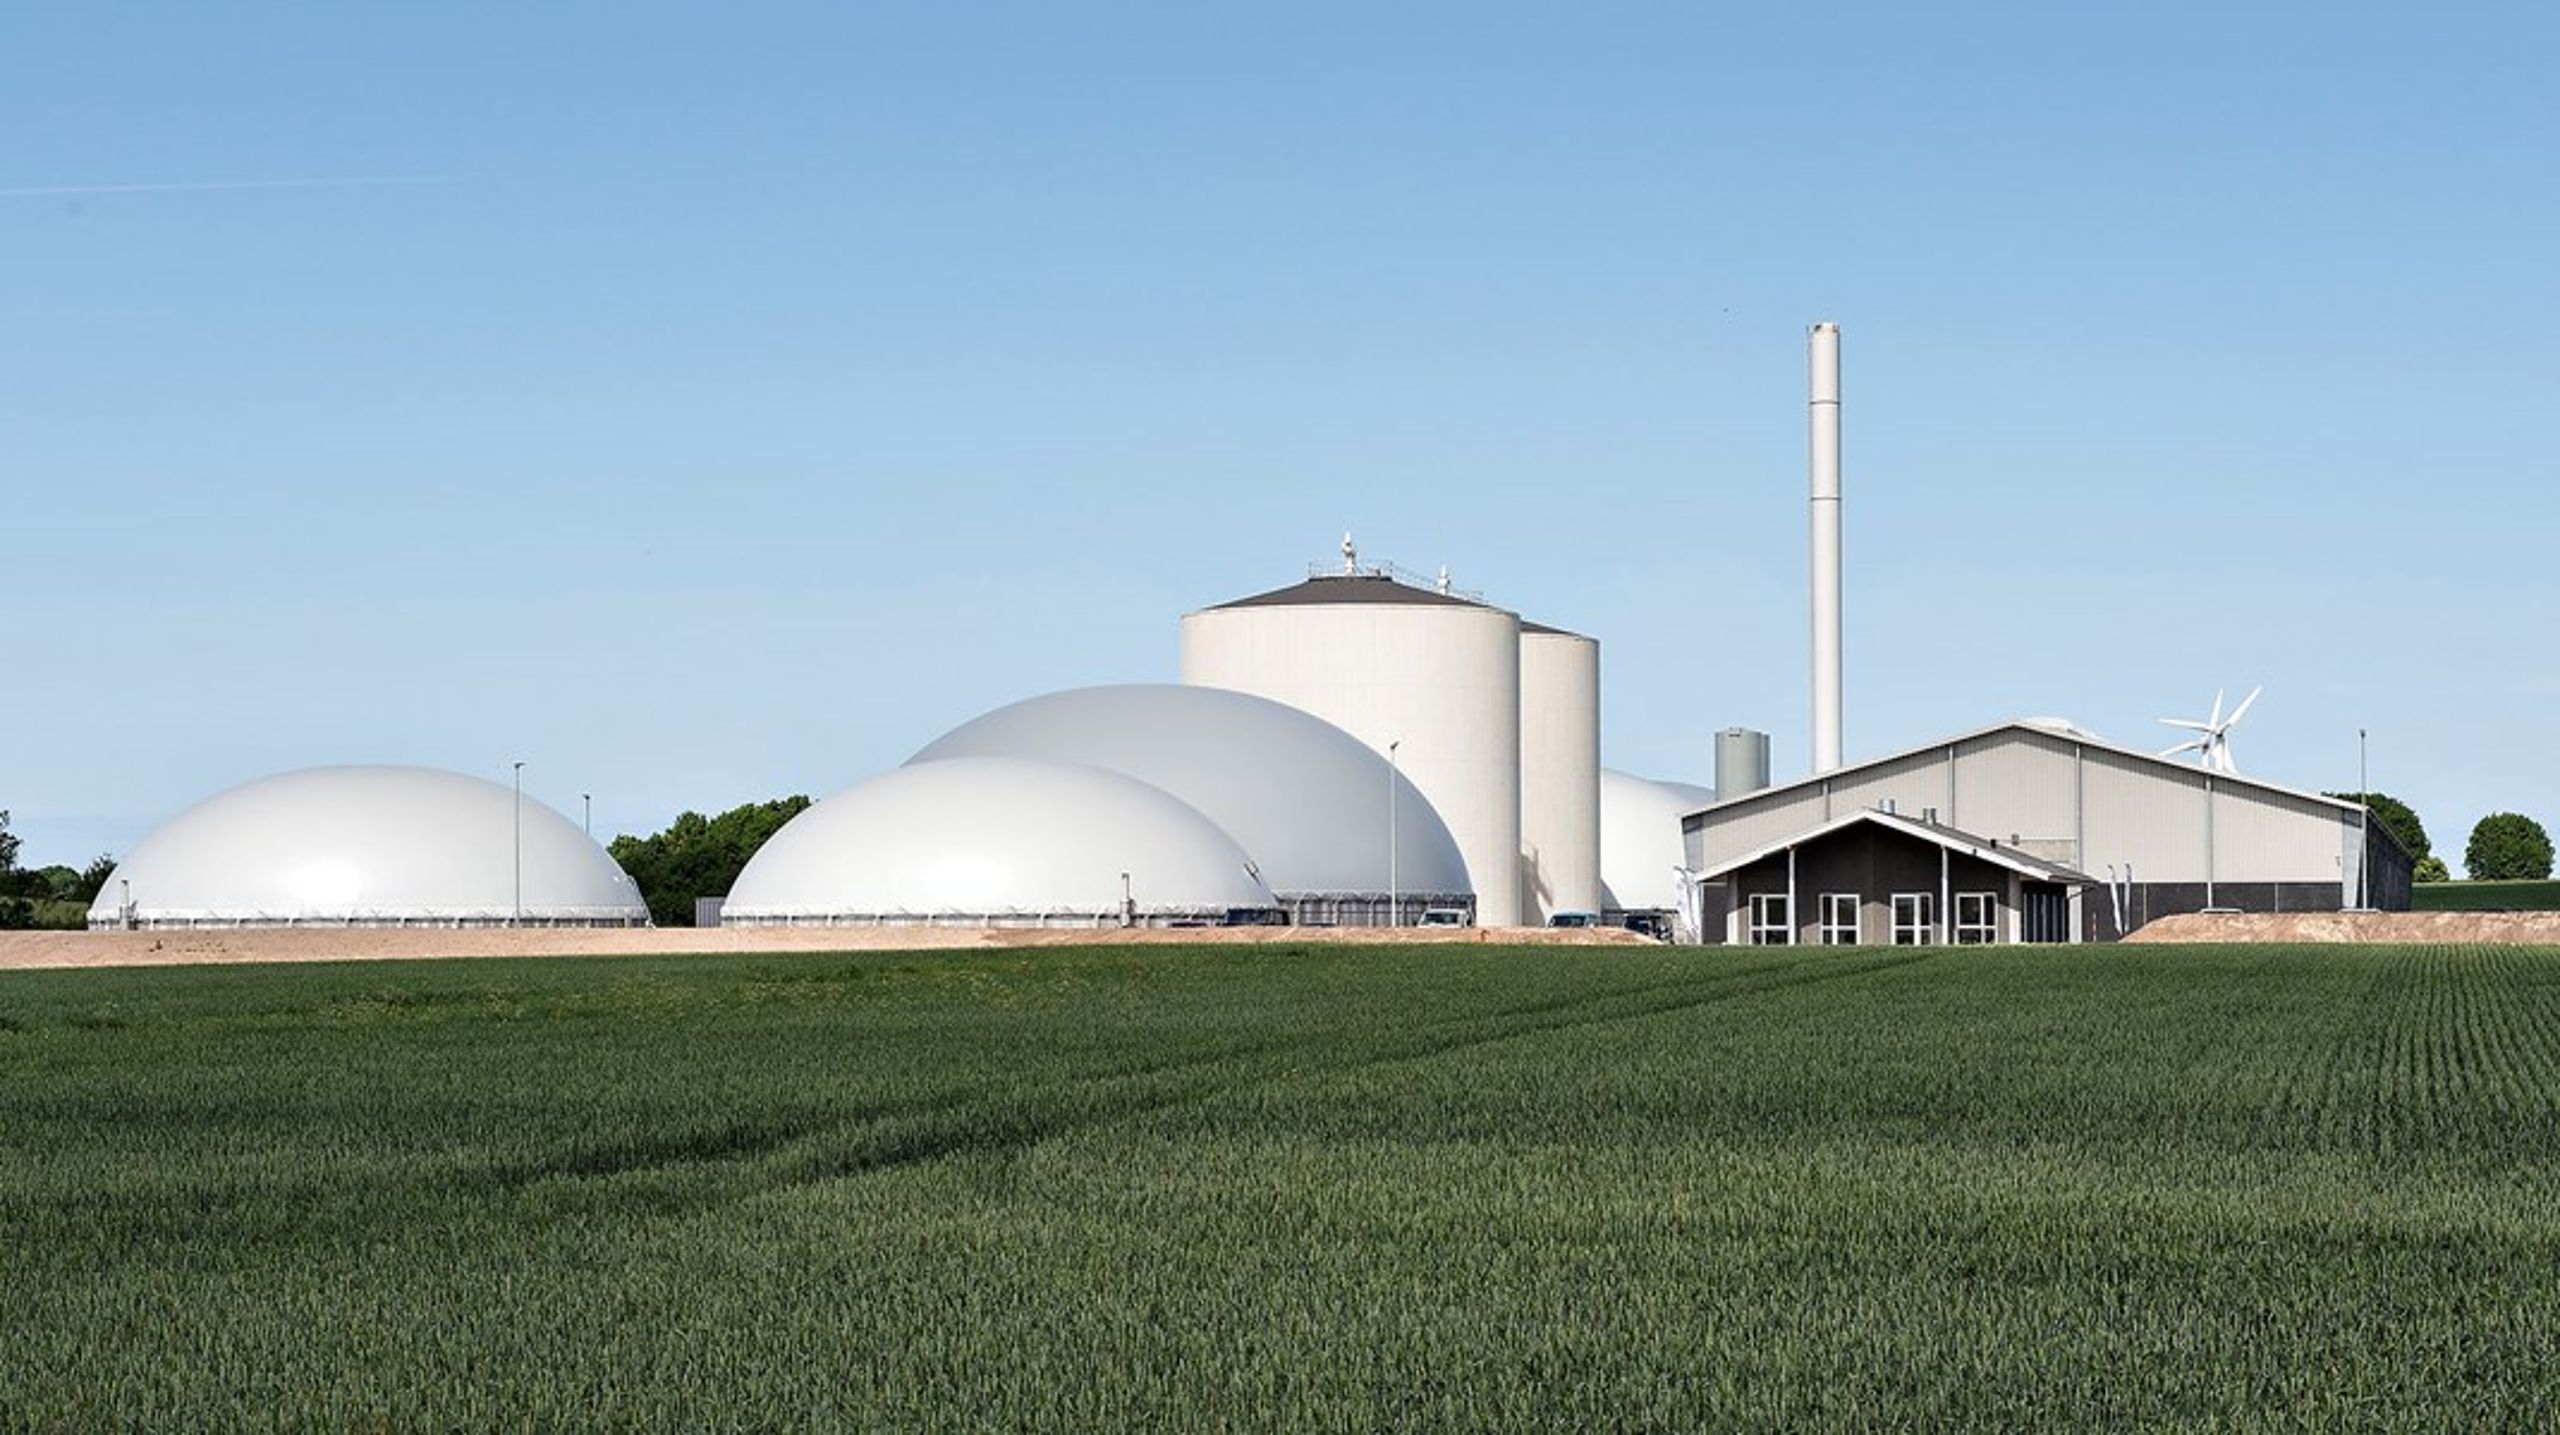 For at nå vores klimamål, skal en større del af landbrugets biomasser laves til klimavenlig biogas, skriver&nbsp;Peter Gæmelke.